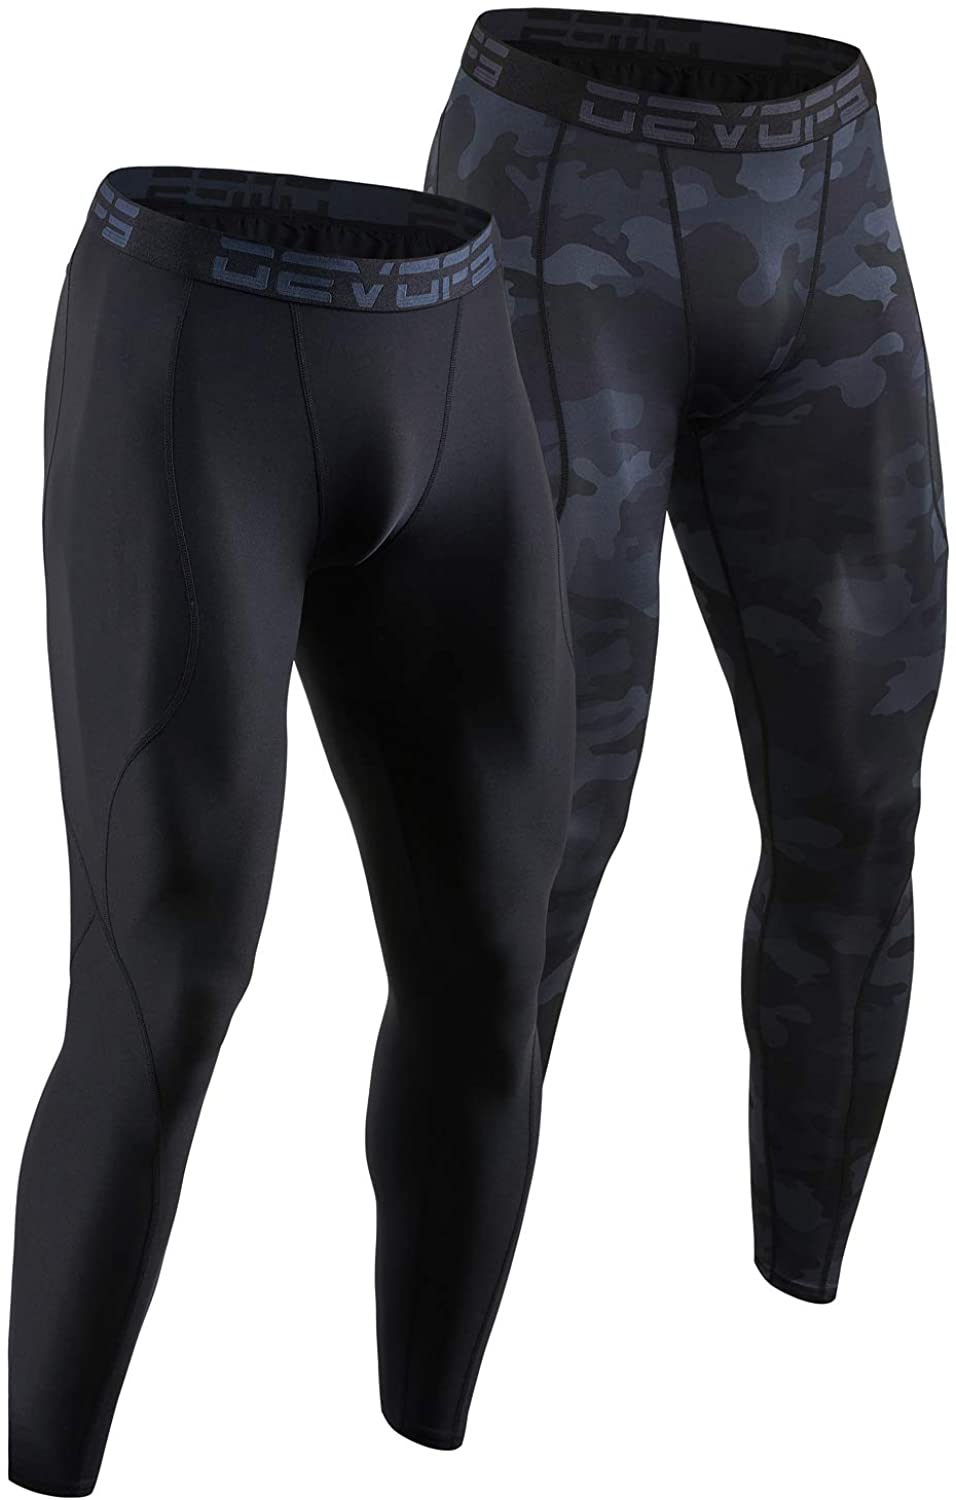 DEVOPS 2 Pack Men's Compression Pants Athletic Leggings with Pocket